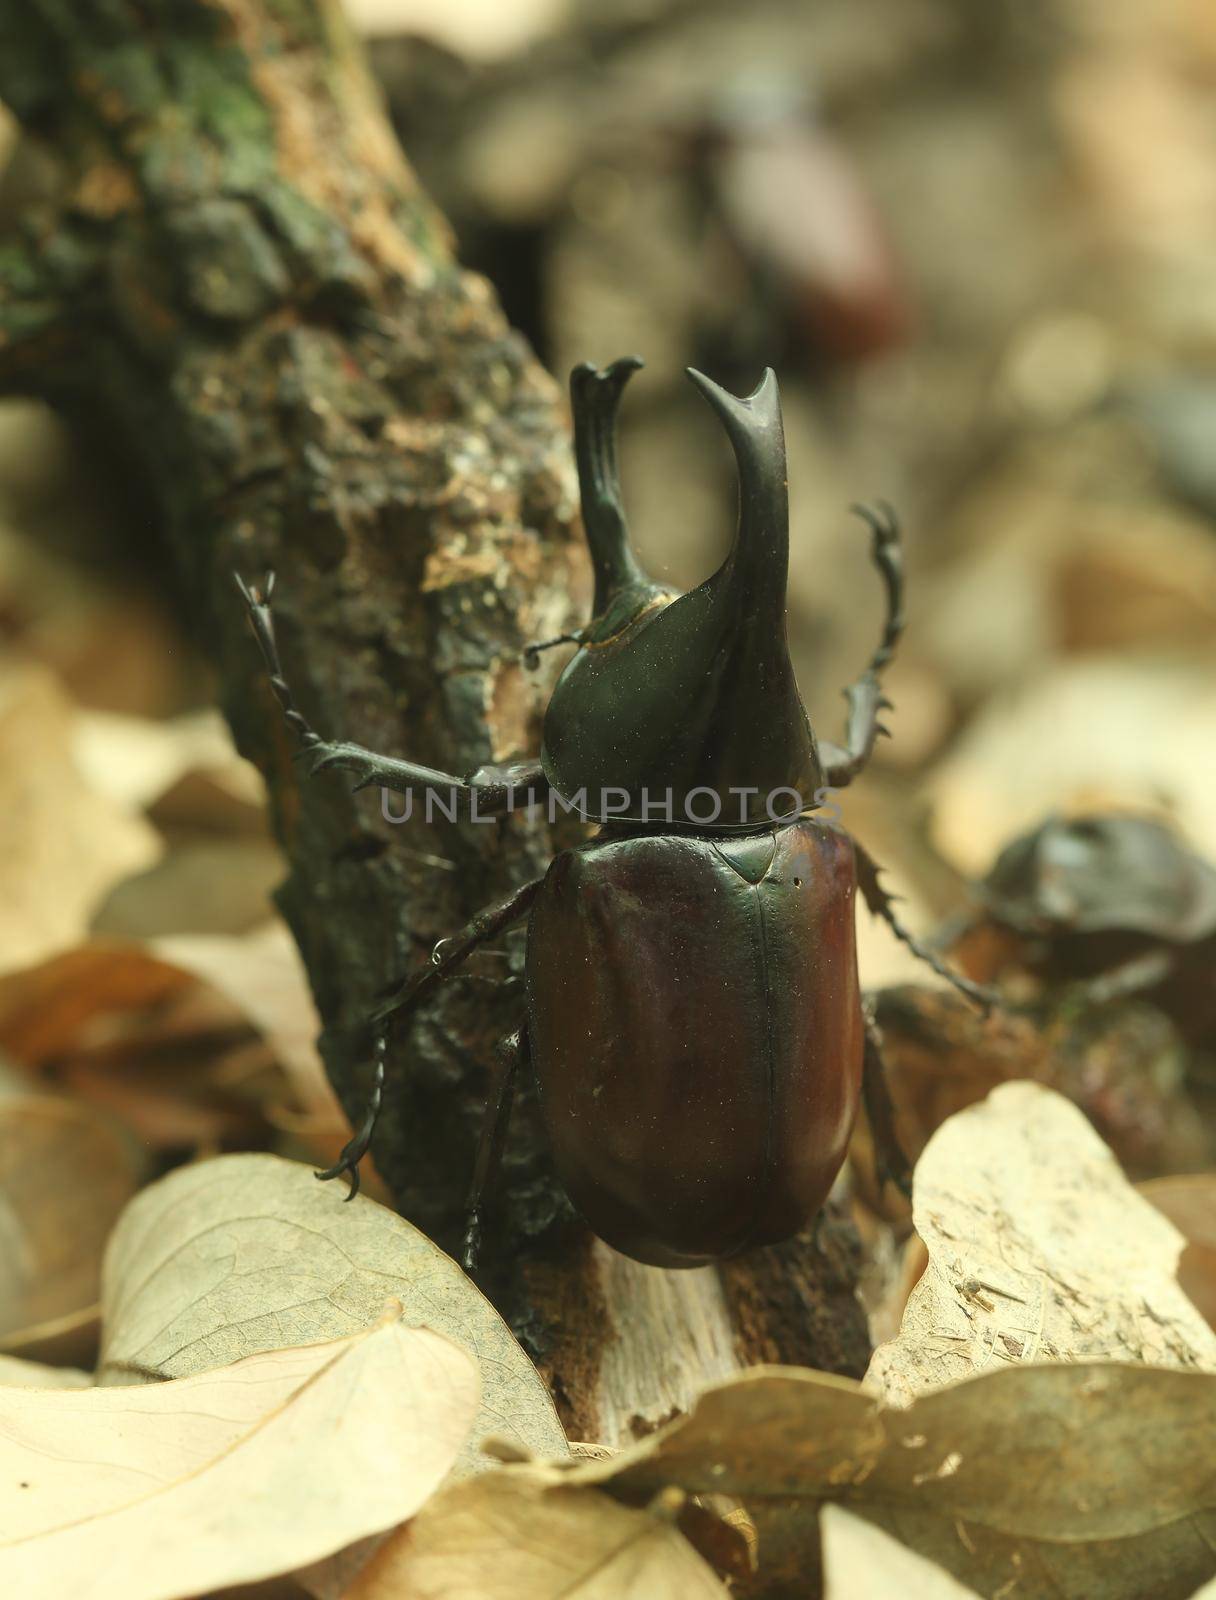 Beetle on wood by geargodz